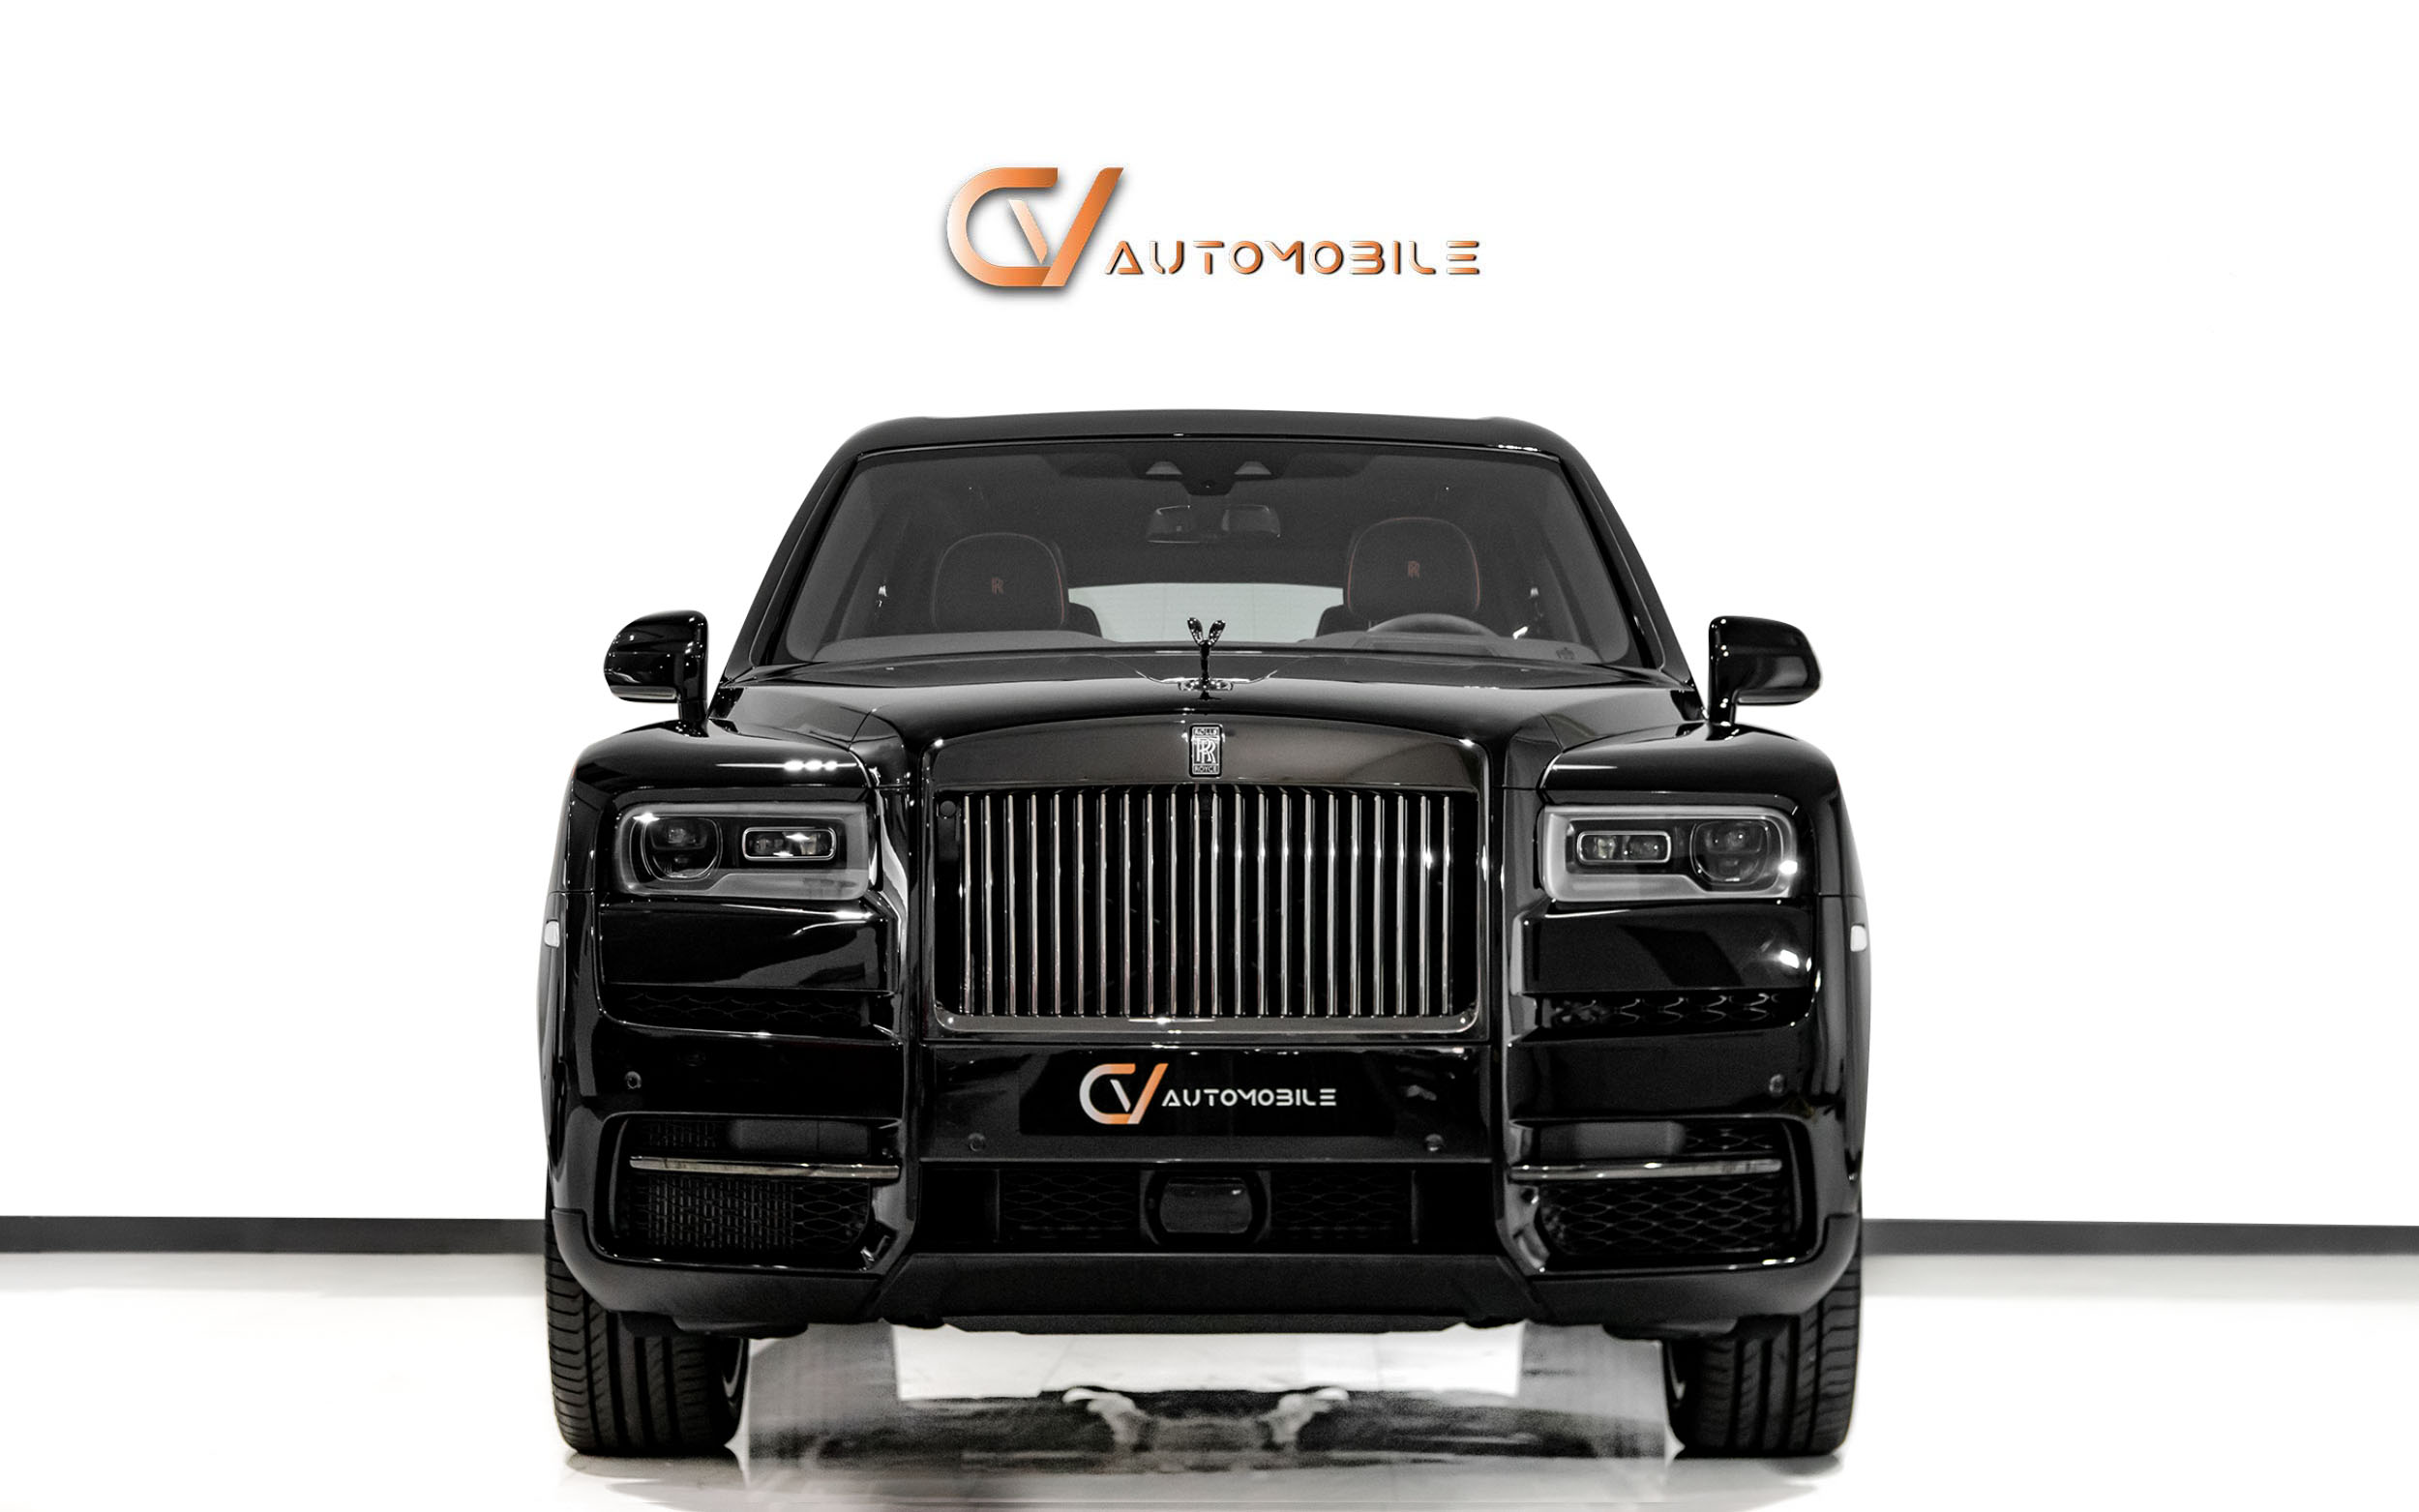 Rolls Royce Repair Dubai  Rolls Royce Service Warranty Packages